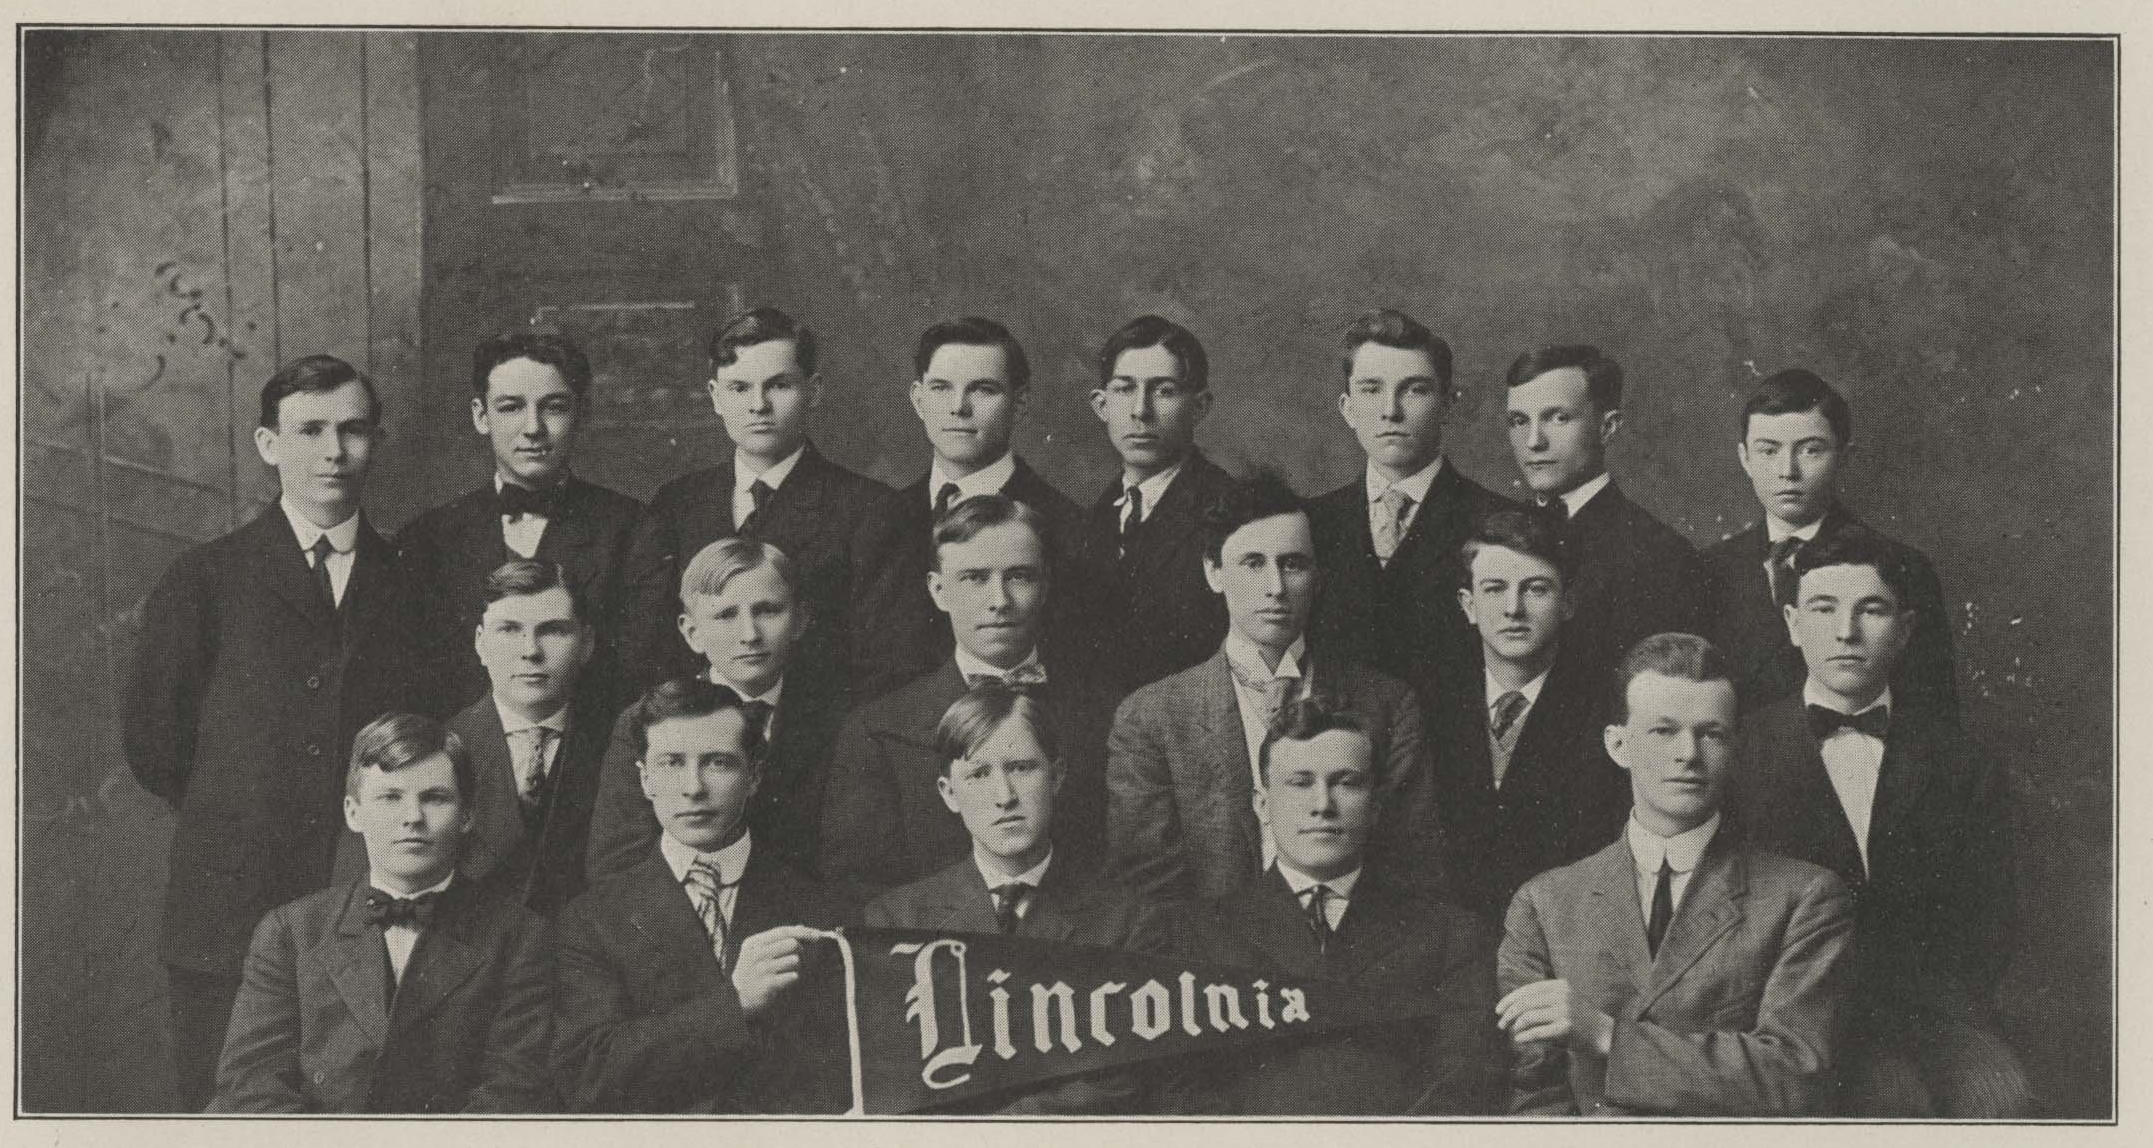 1909 Lincolnian Literary Society